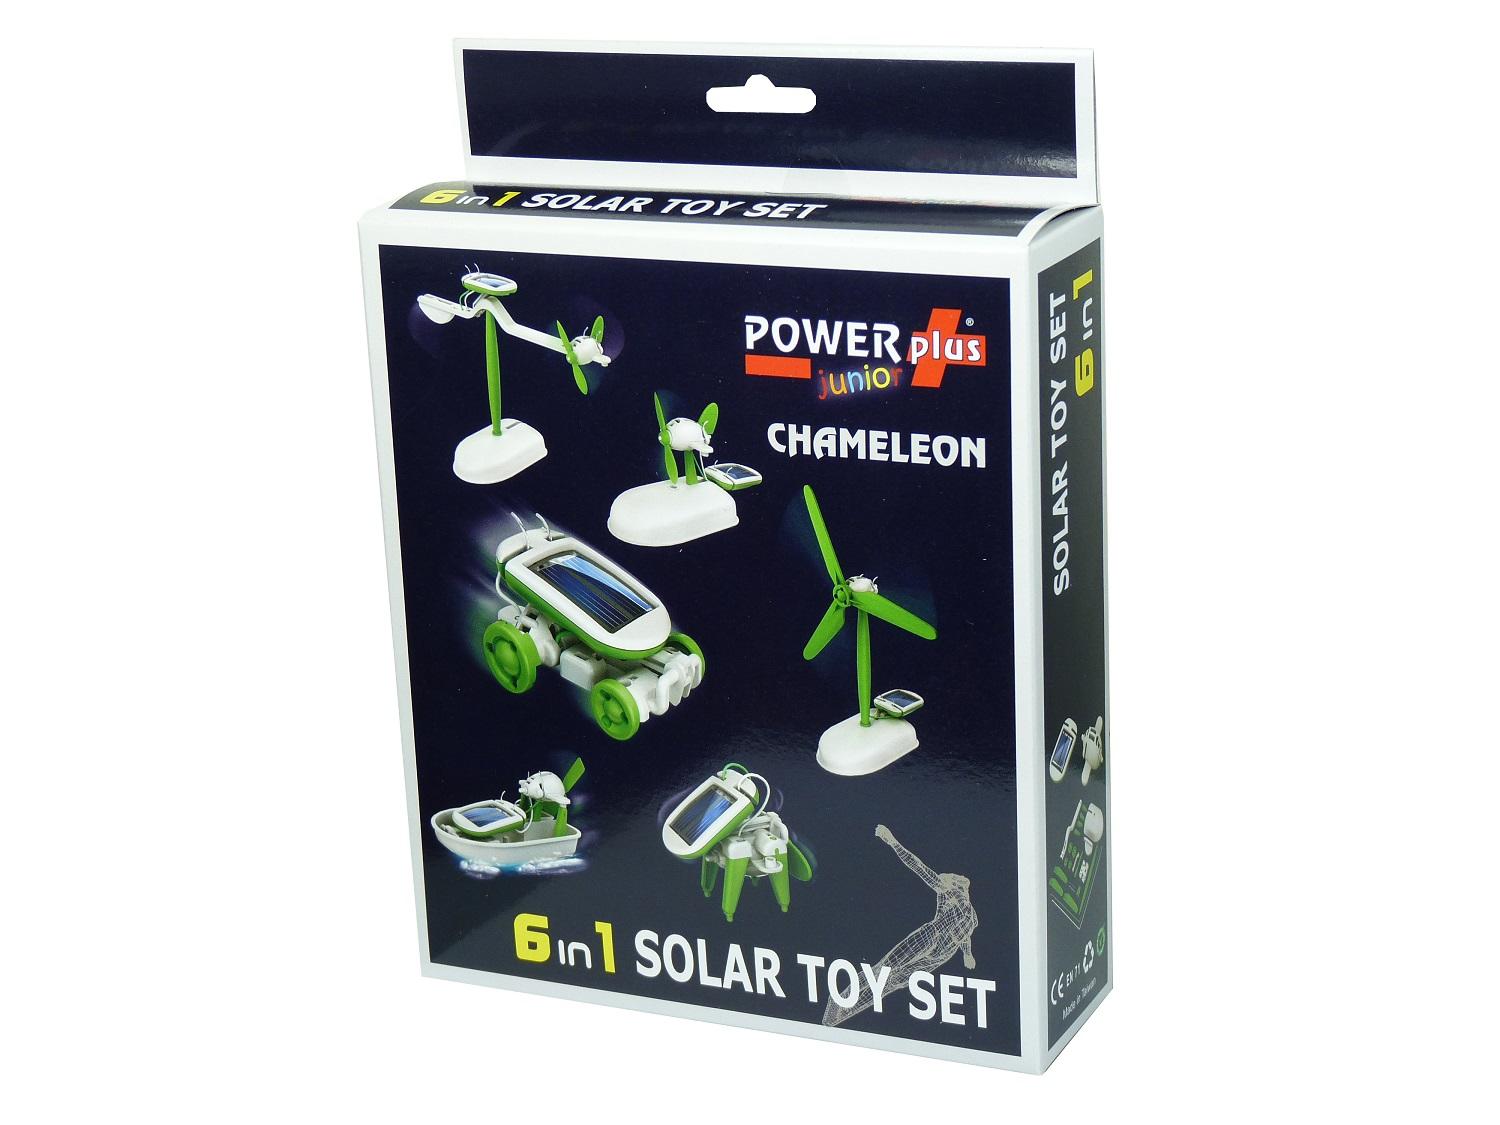 POWERplus "Junior" Chameleon 6 in 1 Solar Educational Toy Set 